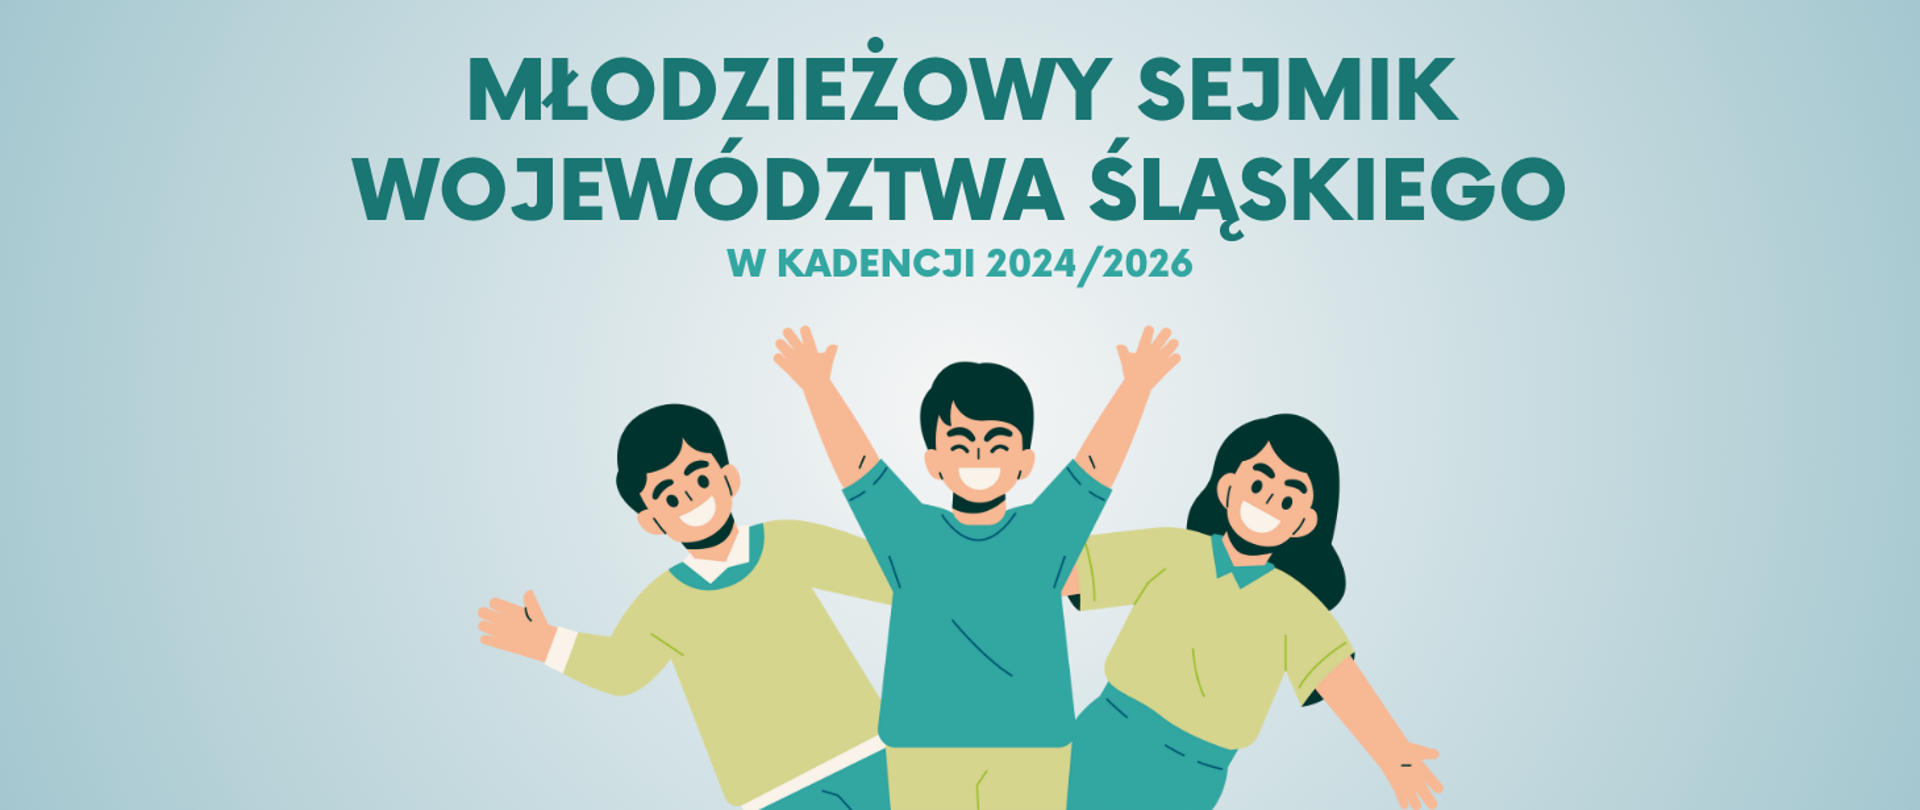 Młodzieżowy Sejmik Województwa Śląskiego w kadencji 2024-2026 - grafika przedstawiająca uśmiechniętych młodych ludzi